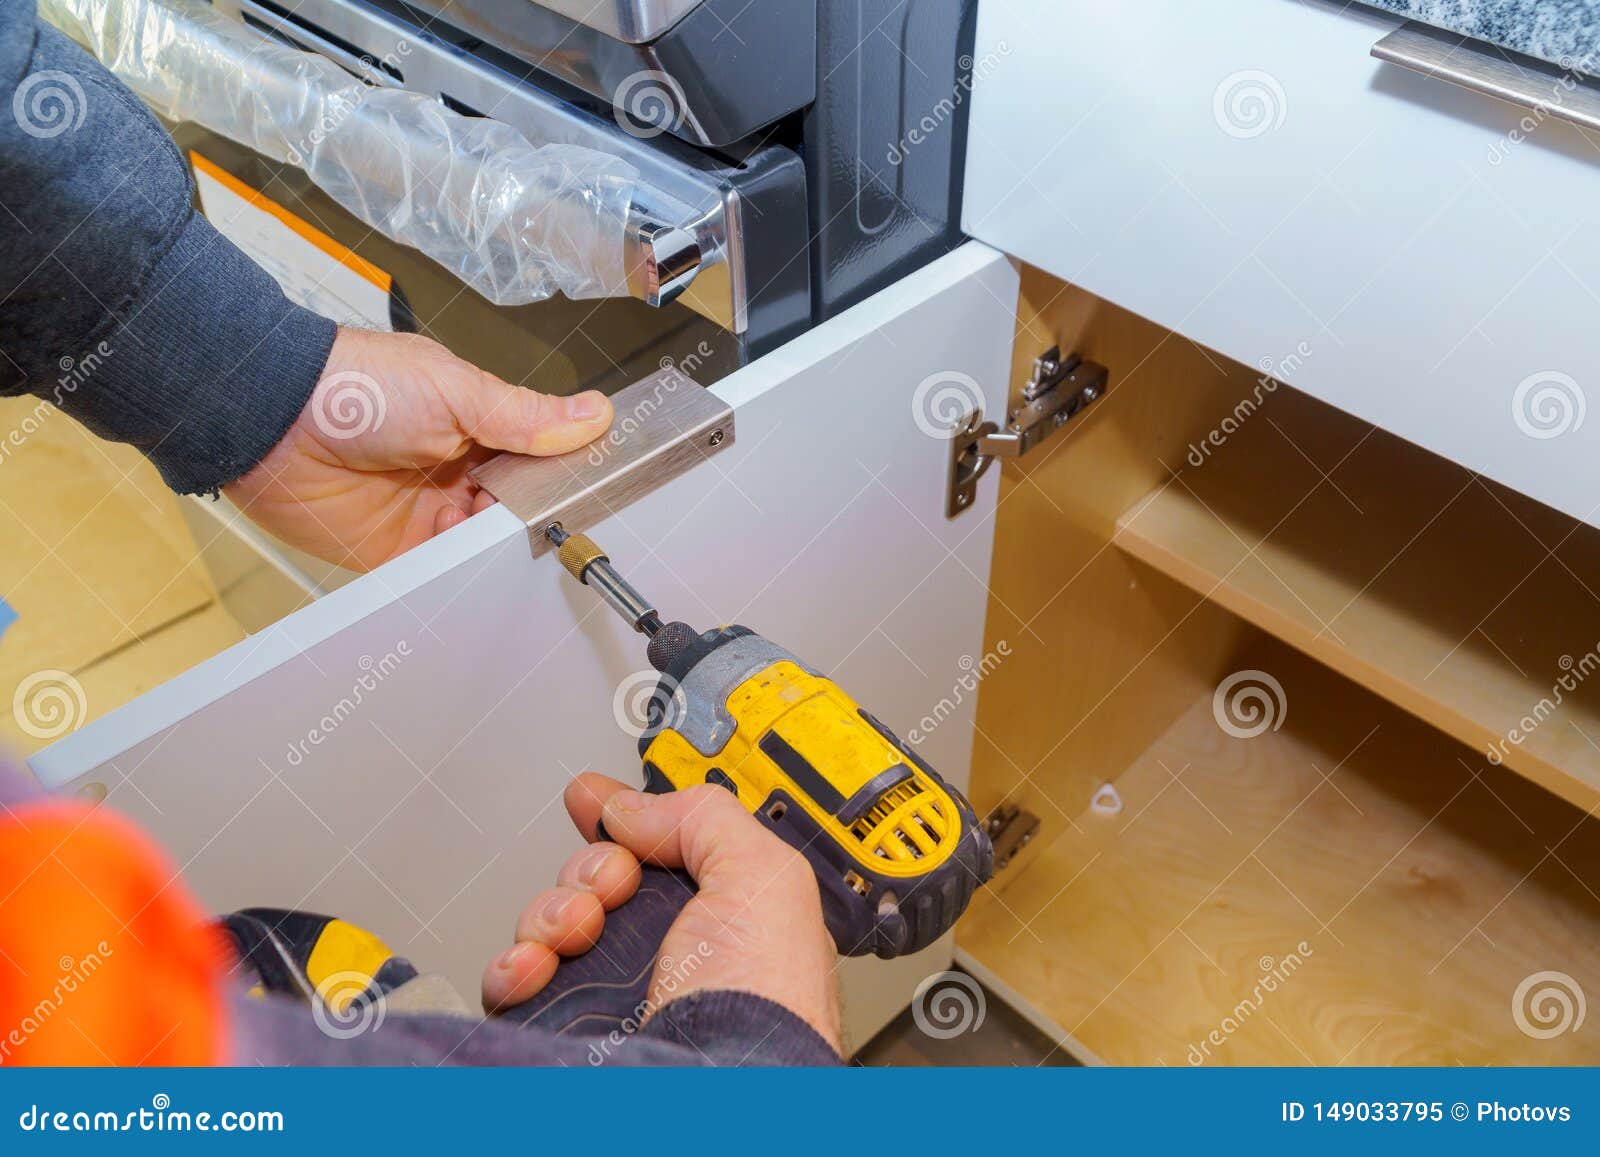 Hand On Handle Installation Door In Kitchen Cabinet Stock Image